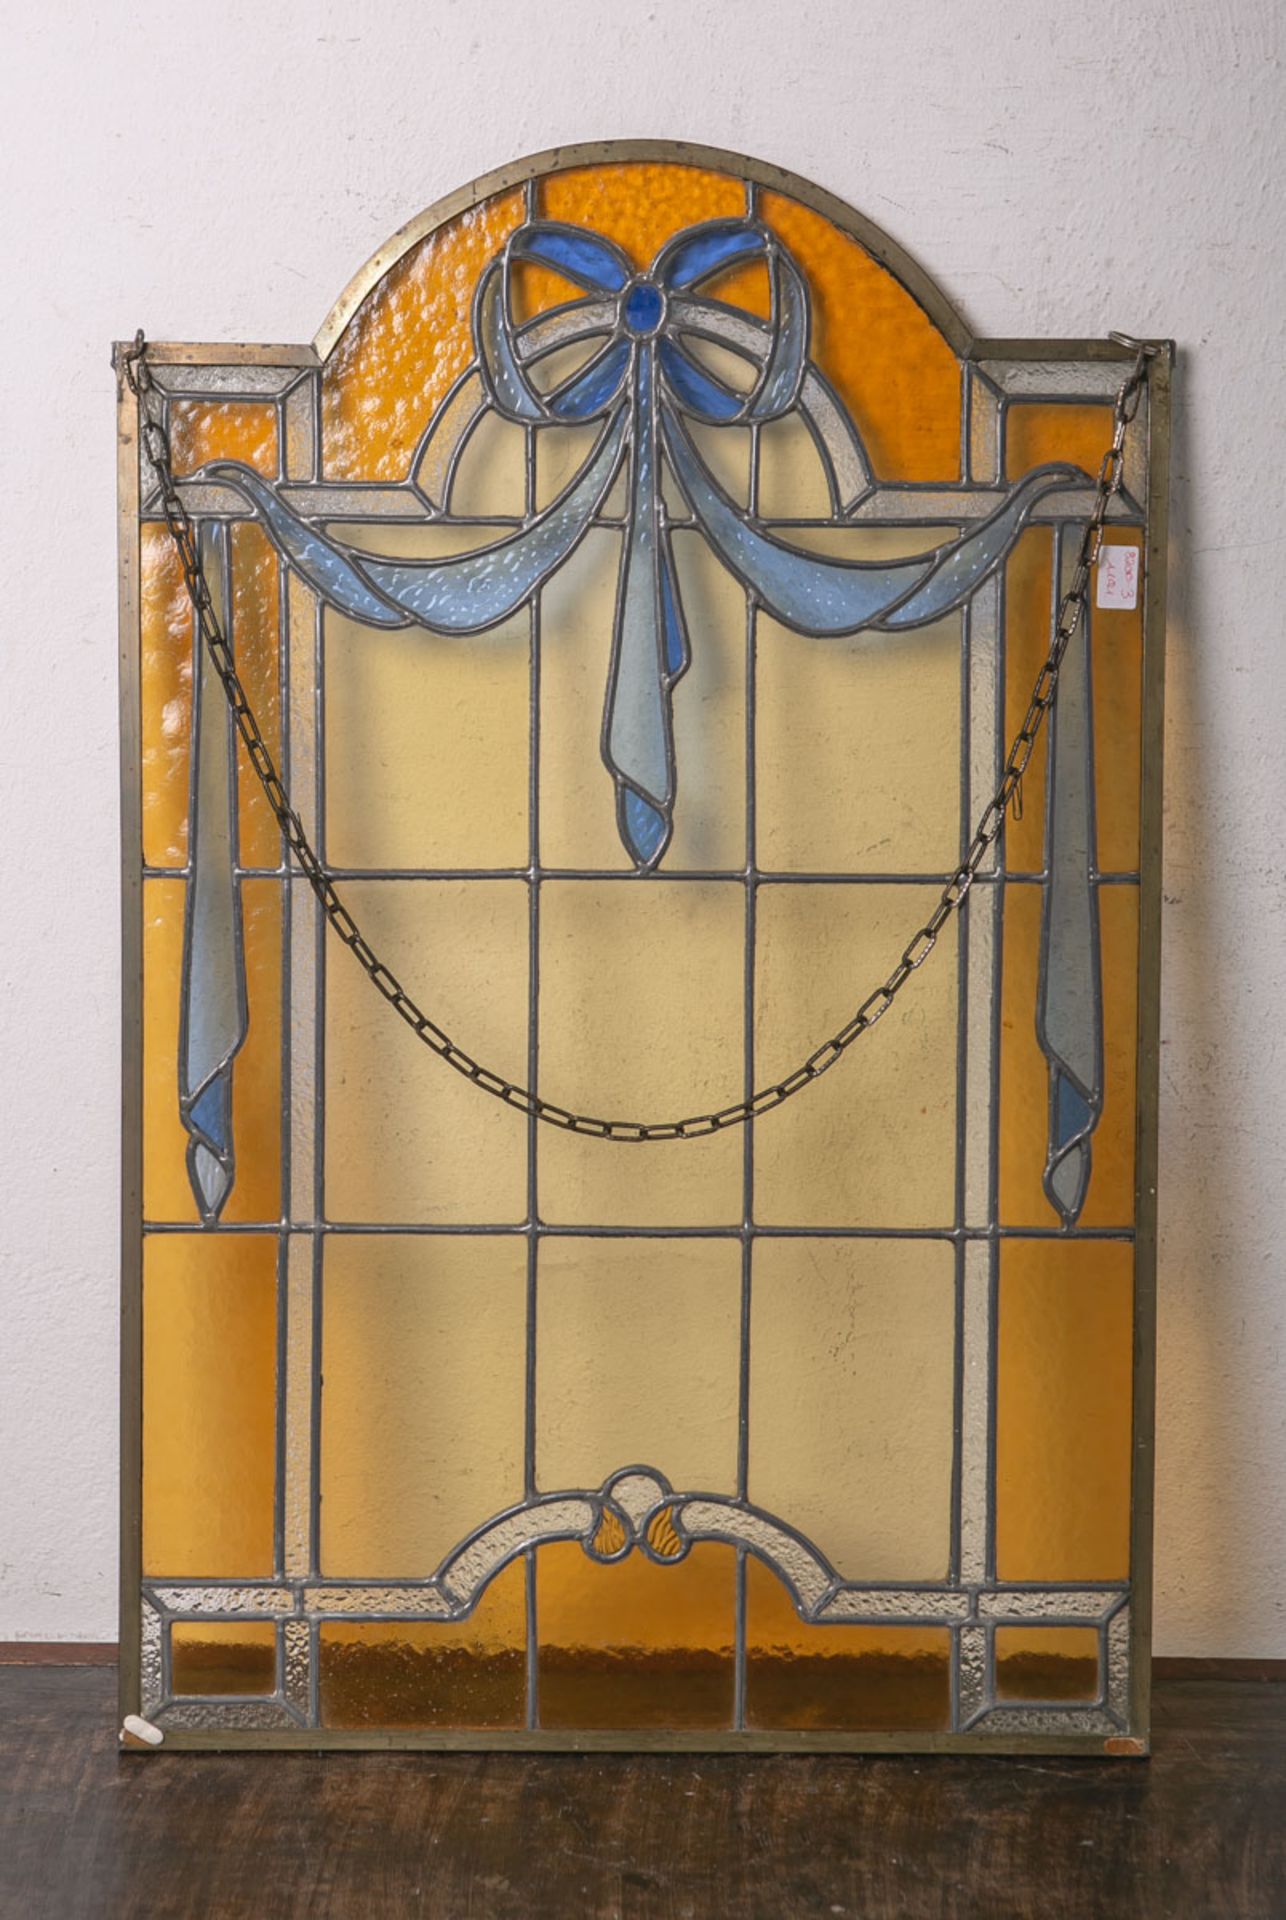 Alte Bleiverglasung (wohl um 1900), ehemals Teil einer Türverglasung, farbige Glasflächen in Form